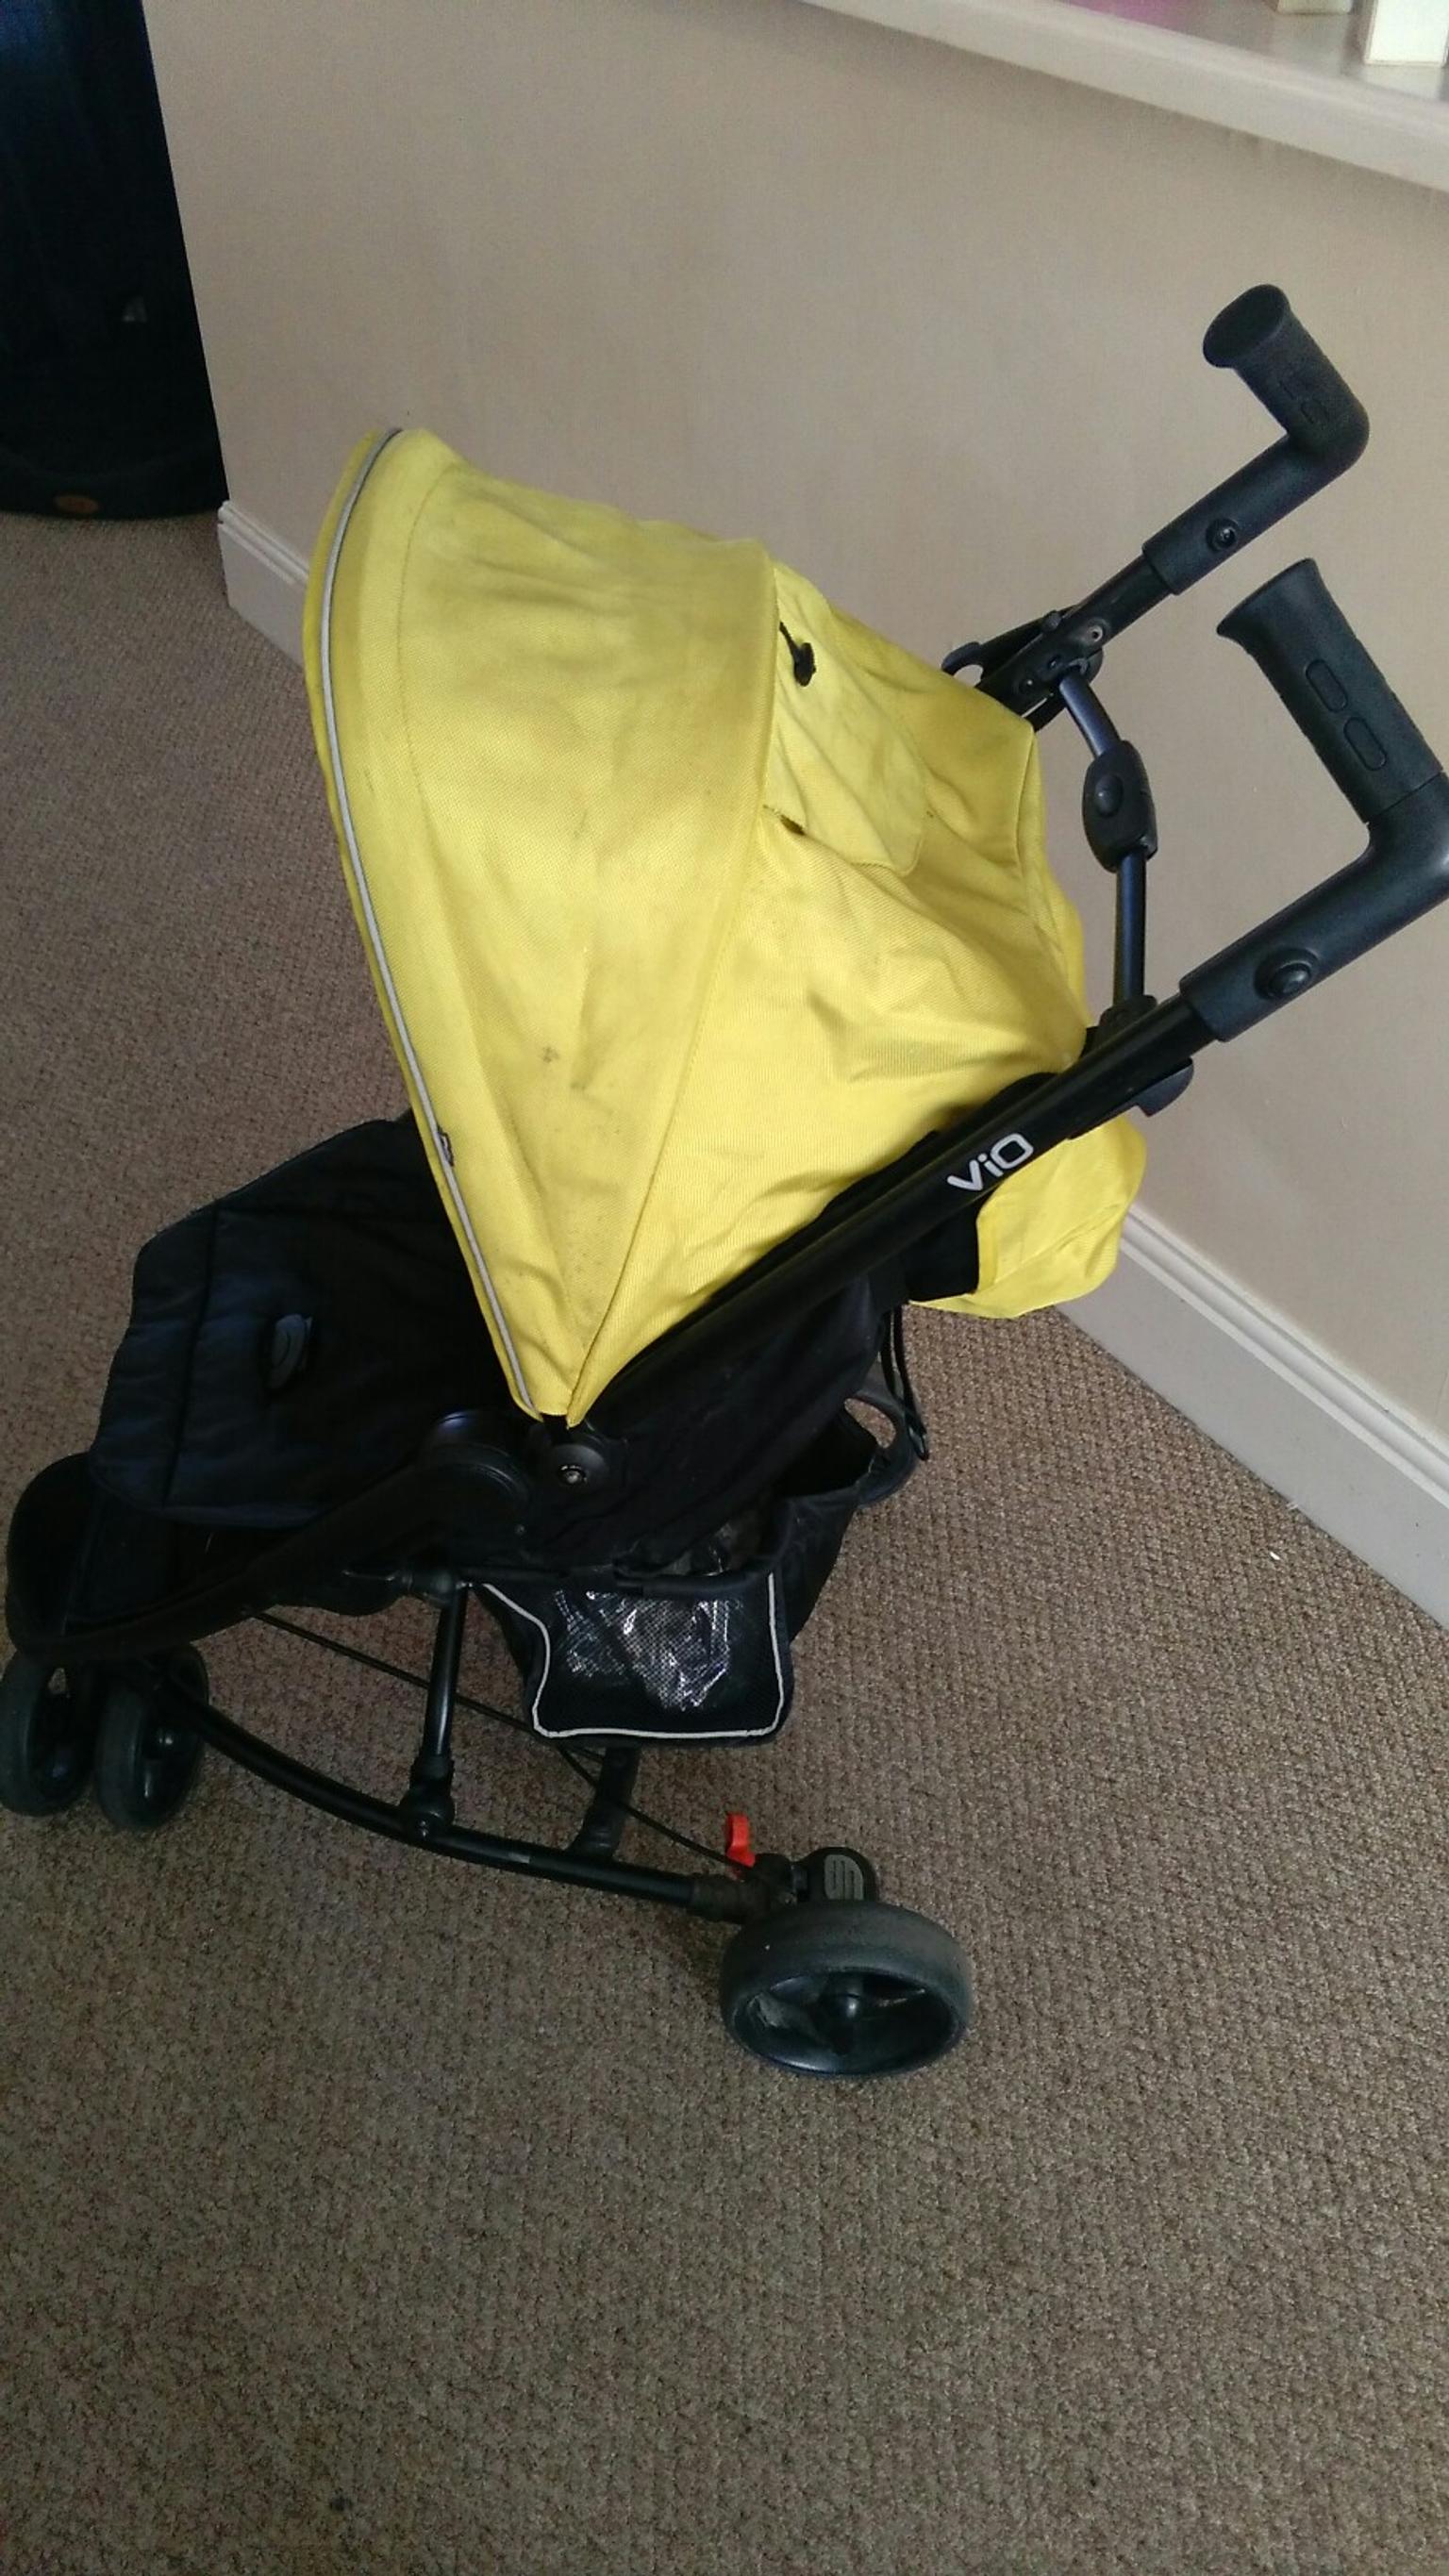 mothercare vio stroller